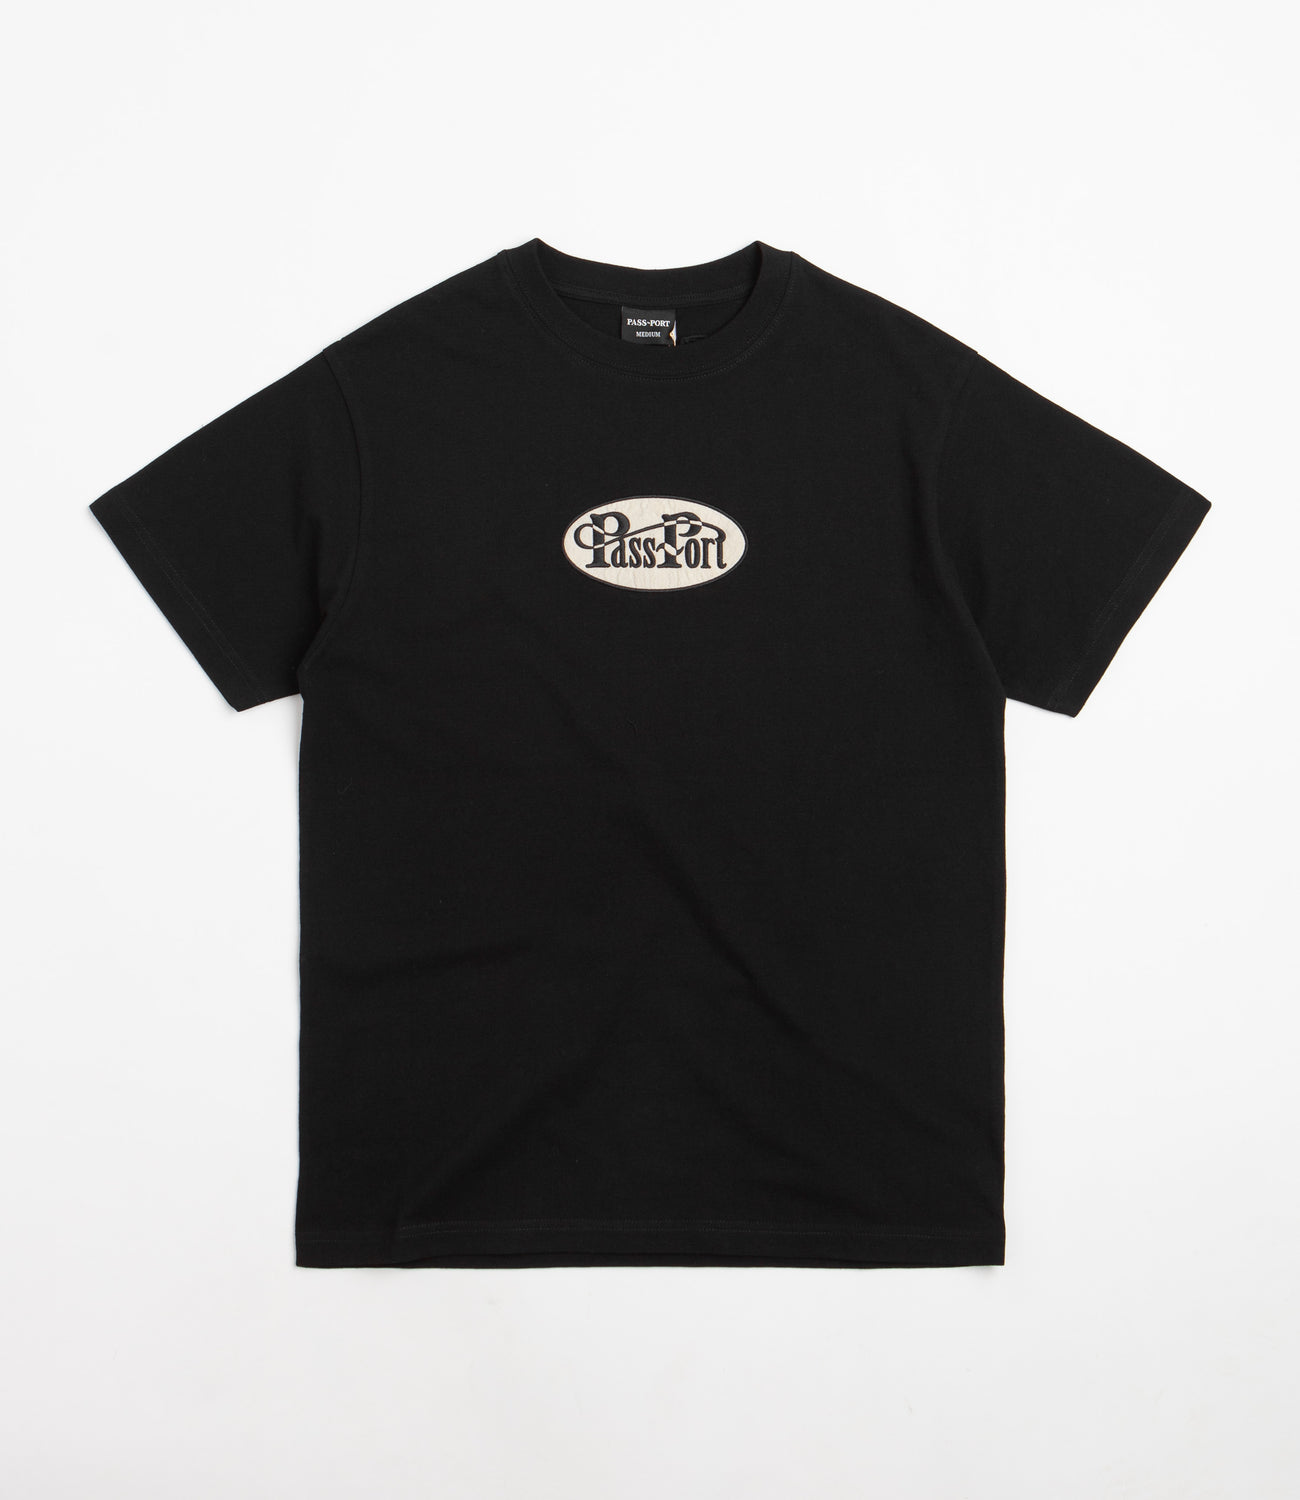 Pass Port Whip Embroidery T-Shirt - Black | Flatspot